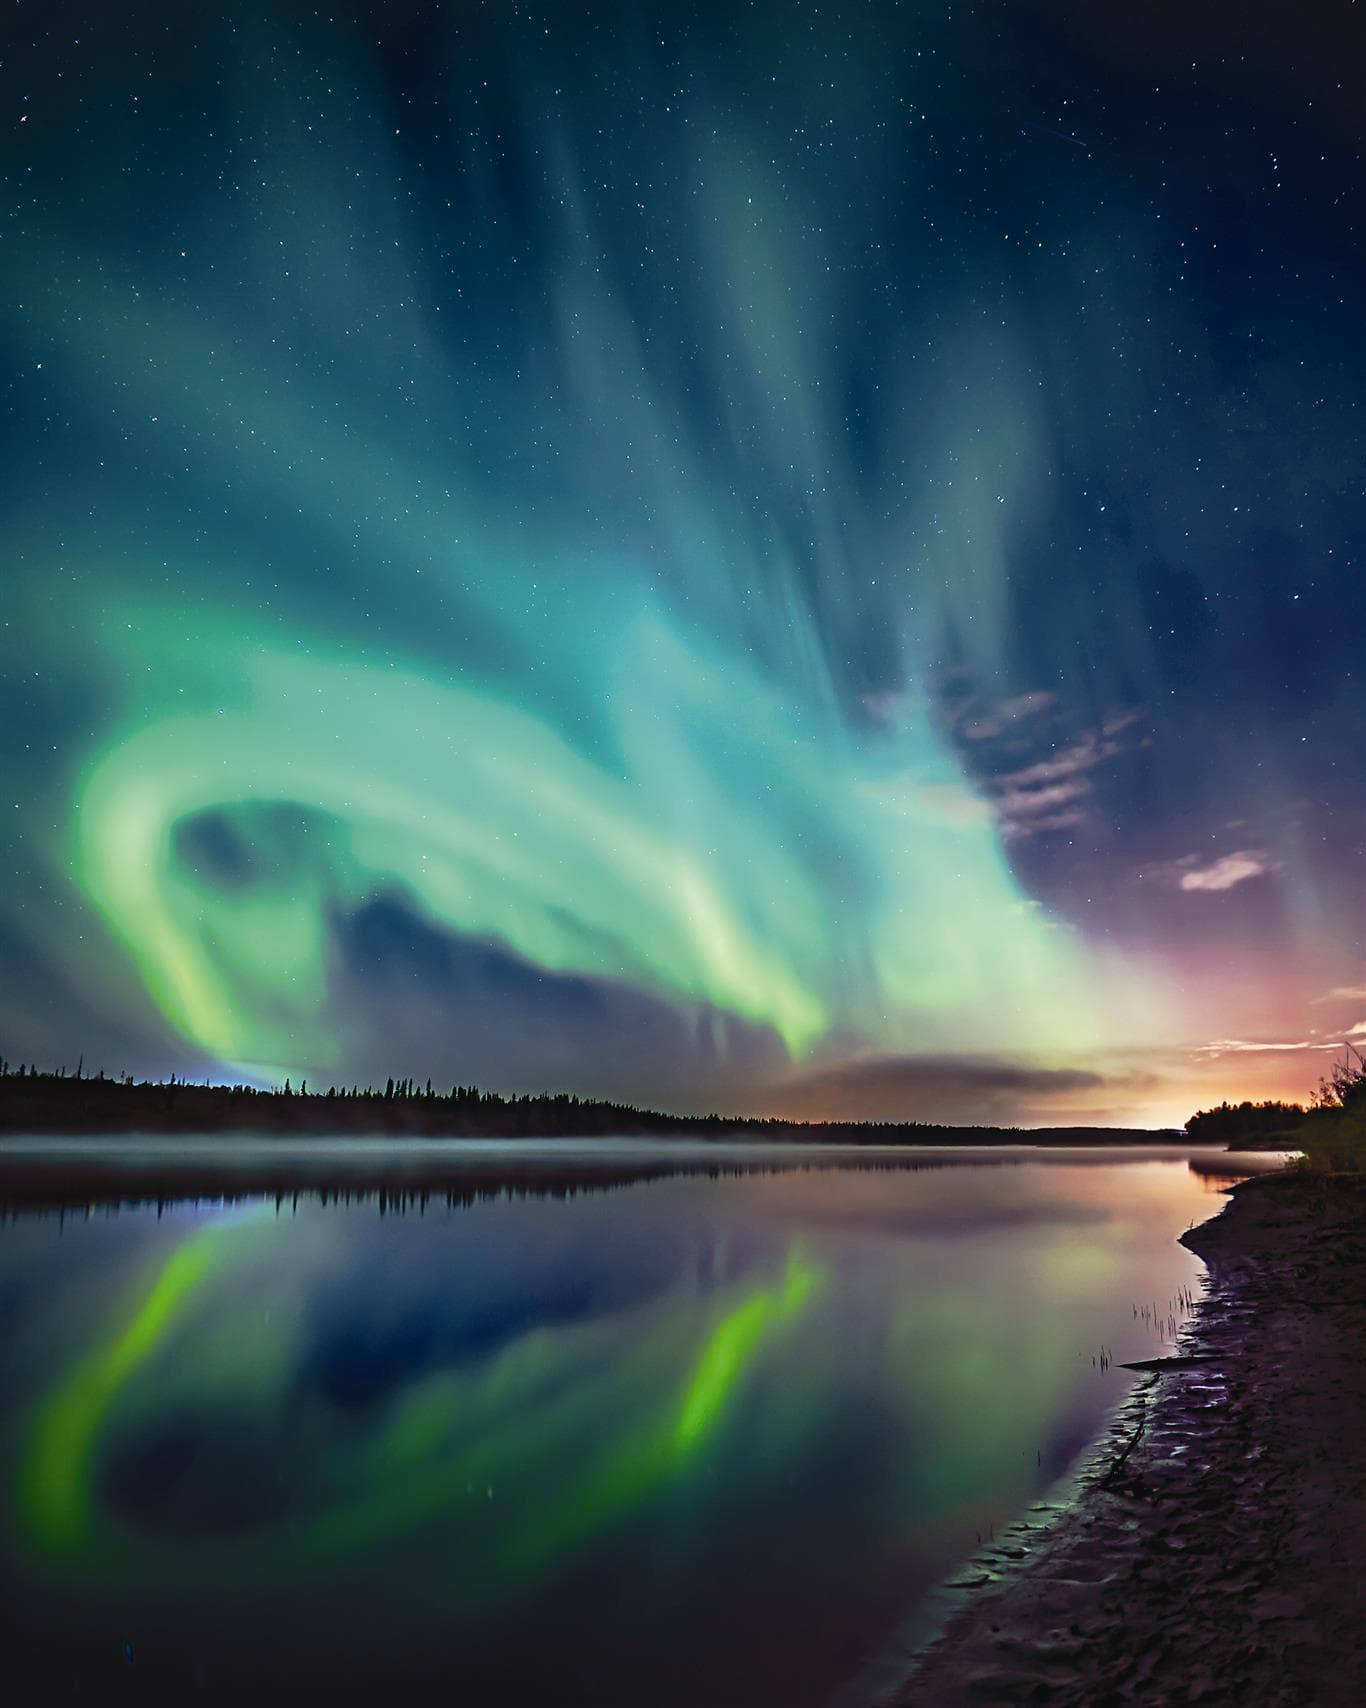 L'image montre une aurore boréale au-dessus d'une rivière. Le ciel est sombre et dégagé, et illuminé de bleu et de vert.